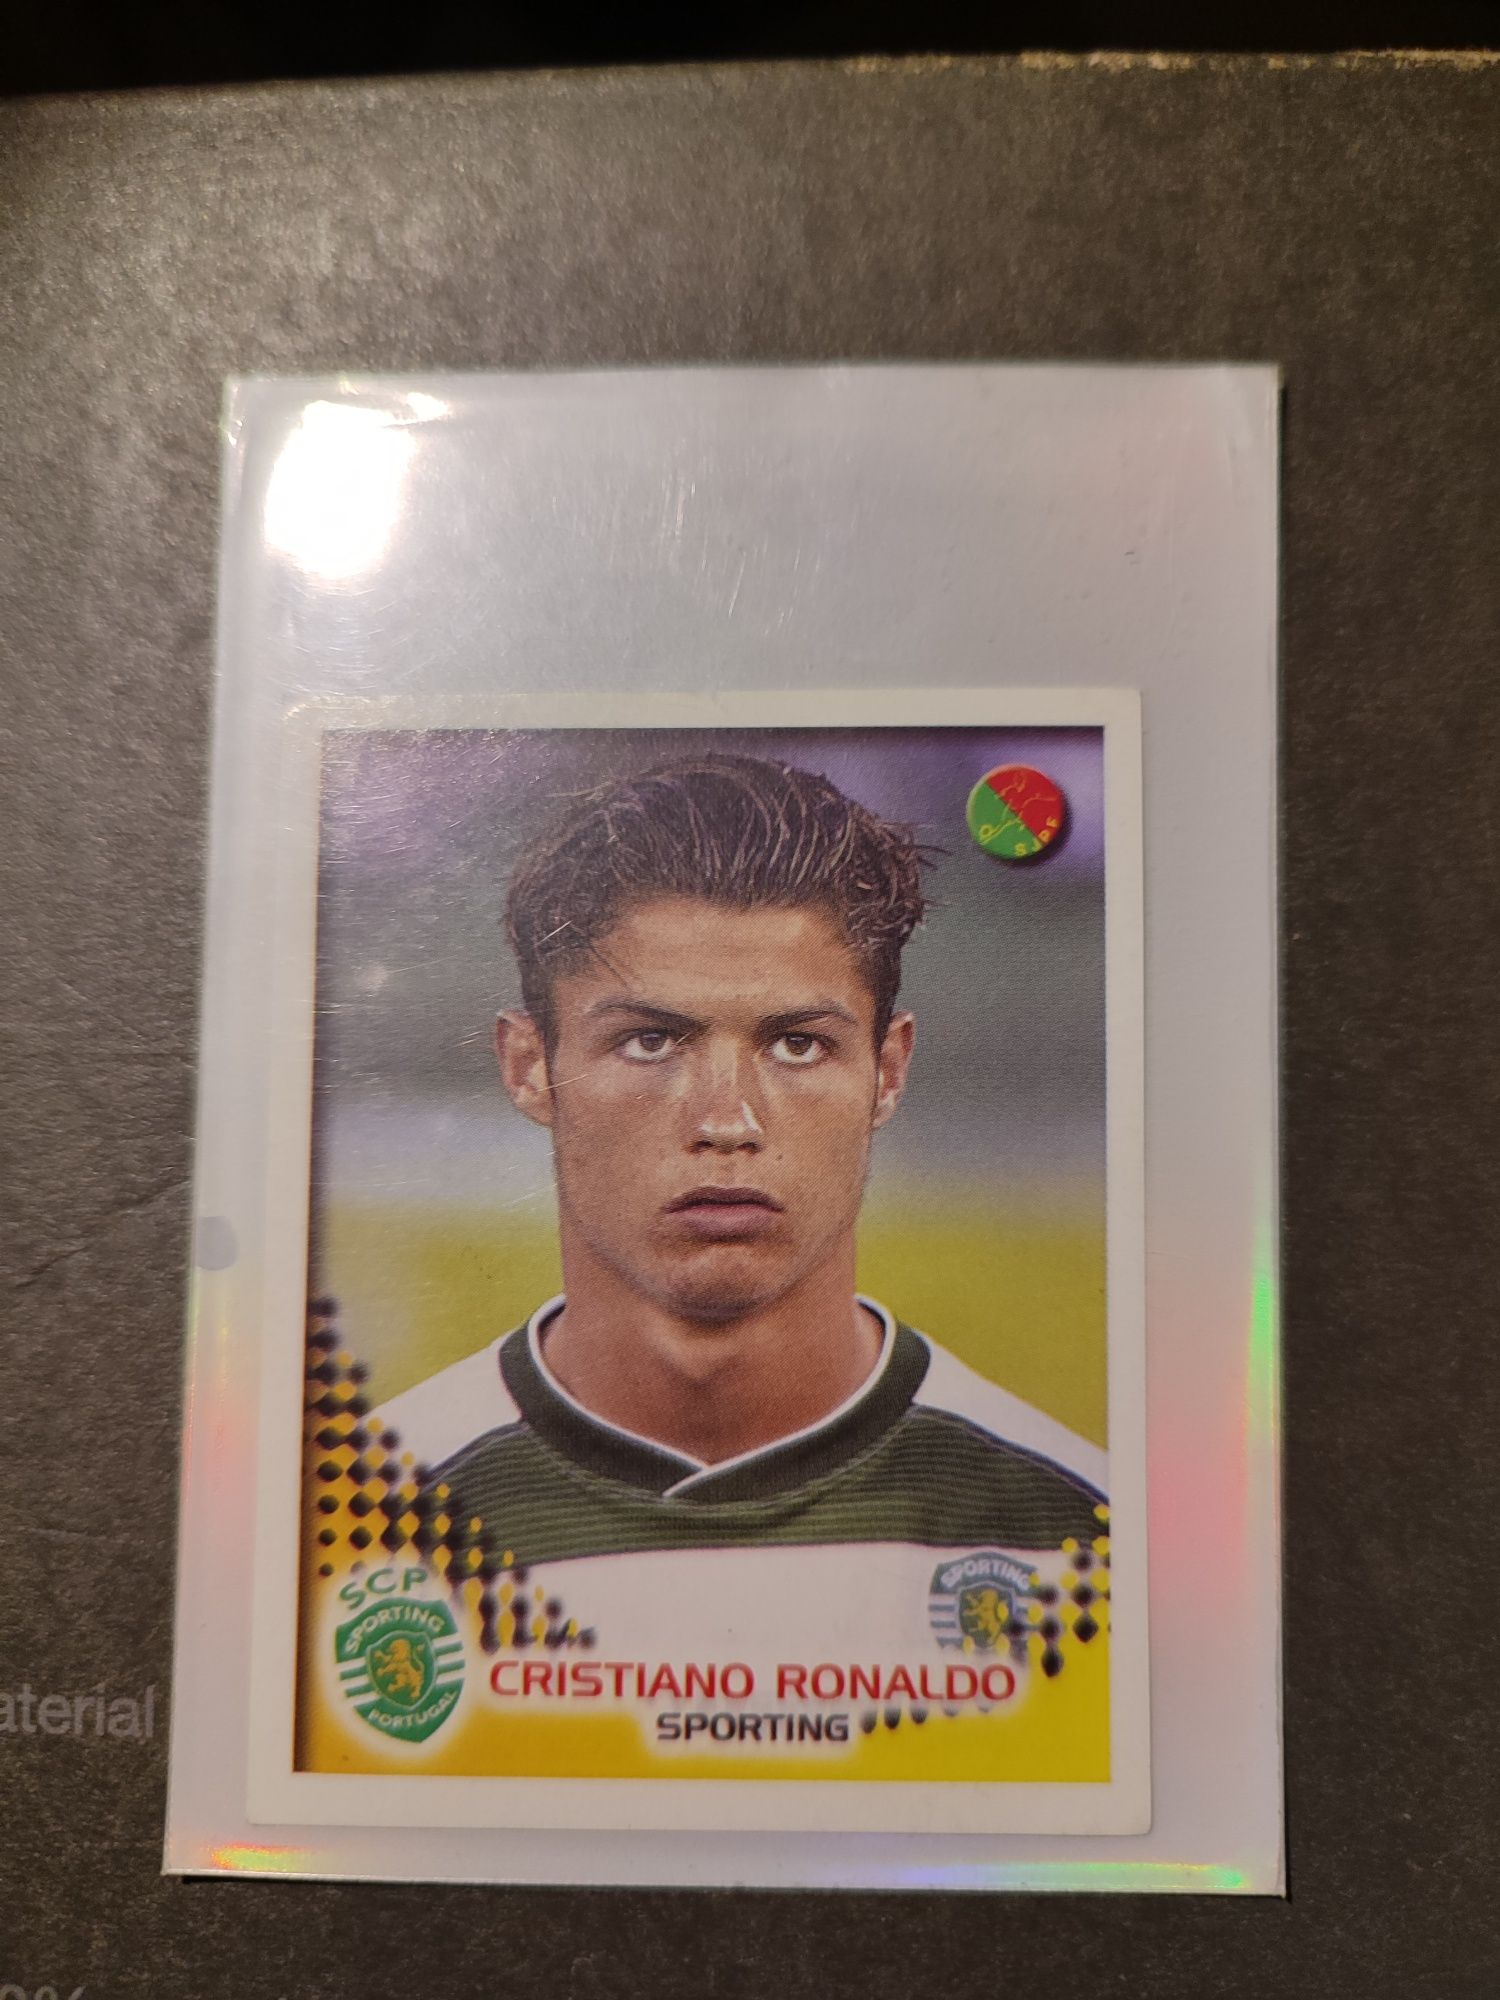 Ronaldo 2002 Panini rookie